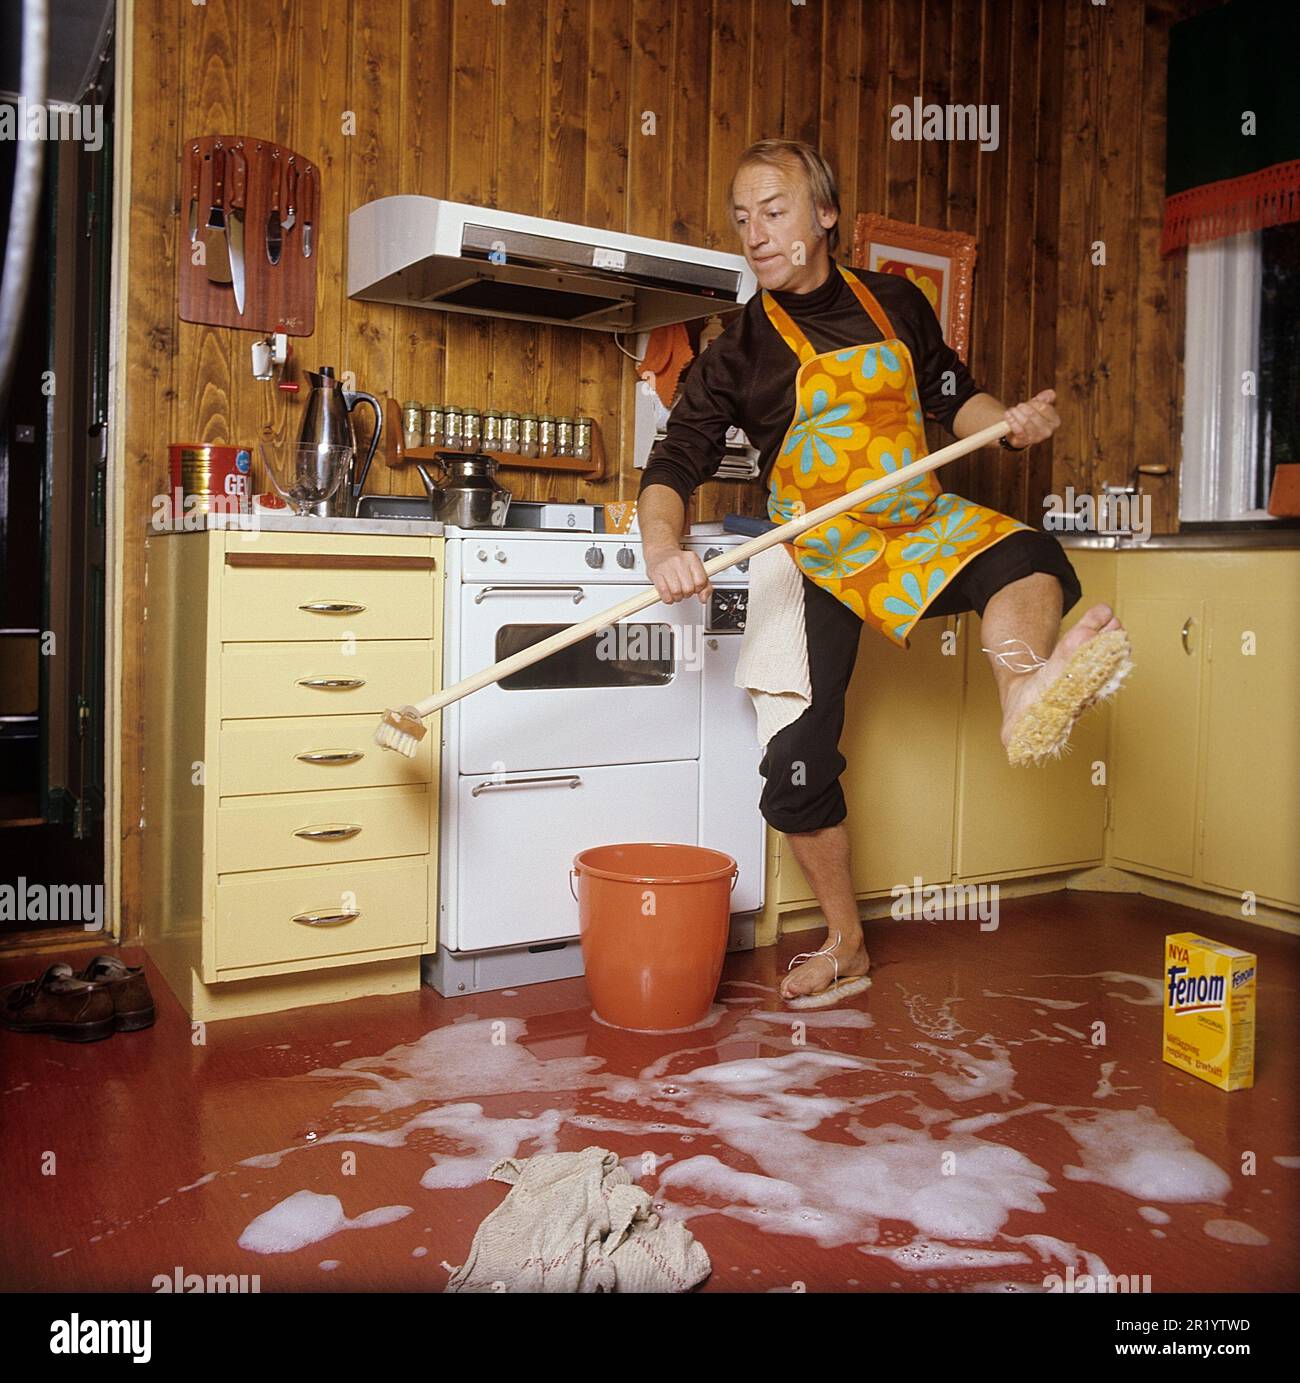 Jour de nettoyage en 1970s. Intérieur d'une cuisine où l'on voit un homme nettoyer le sol. Pour accélérer le travail, il a monté des brosses sur ses pieds. Il est acteur Stig Grybe 1928-2017. 4 octobre 1972. Kristoffersson Banque D'Images